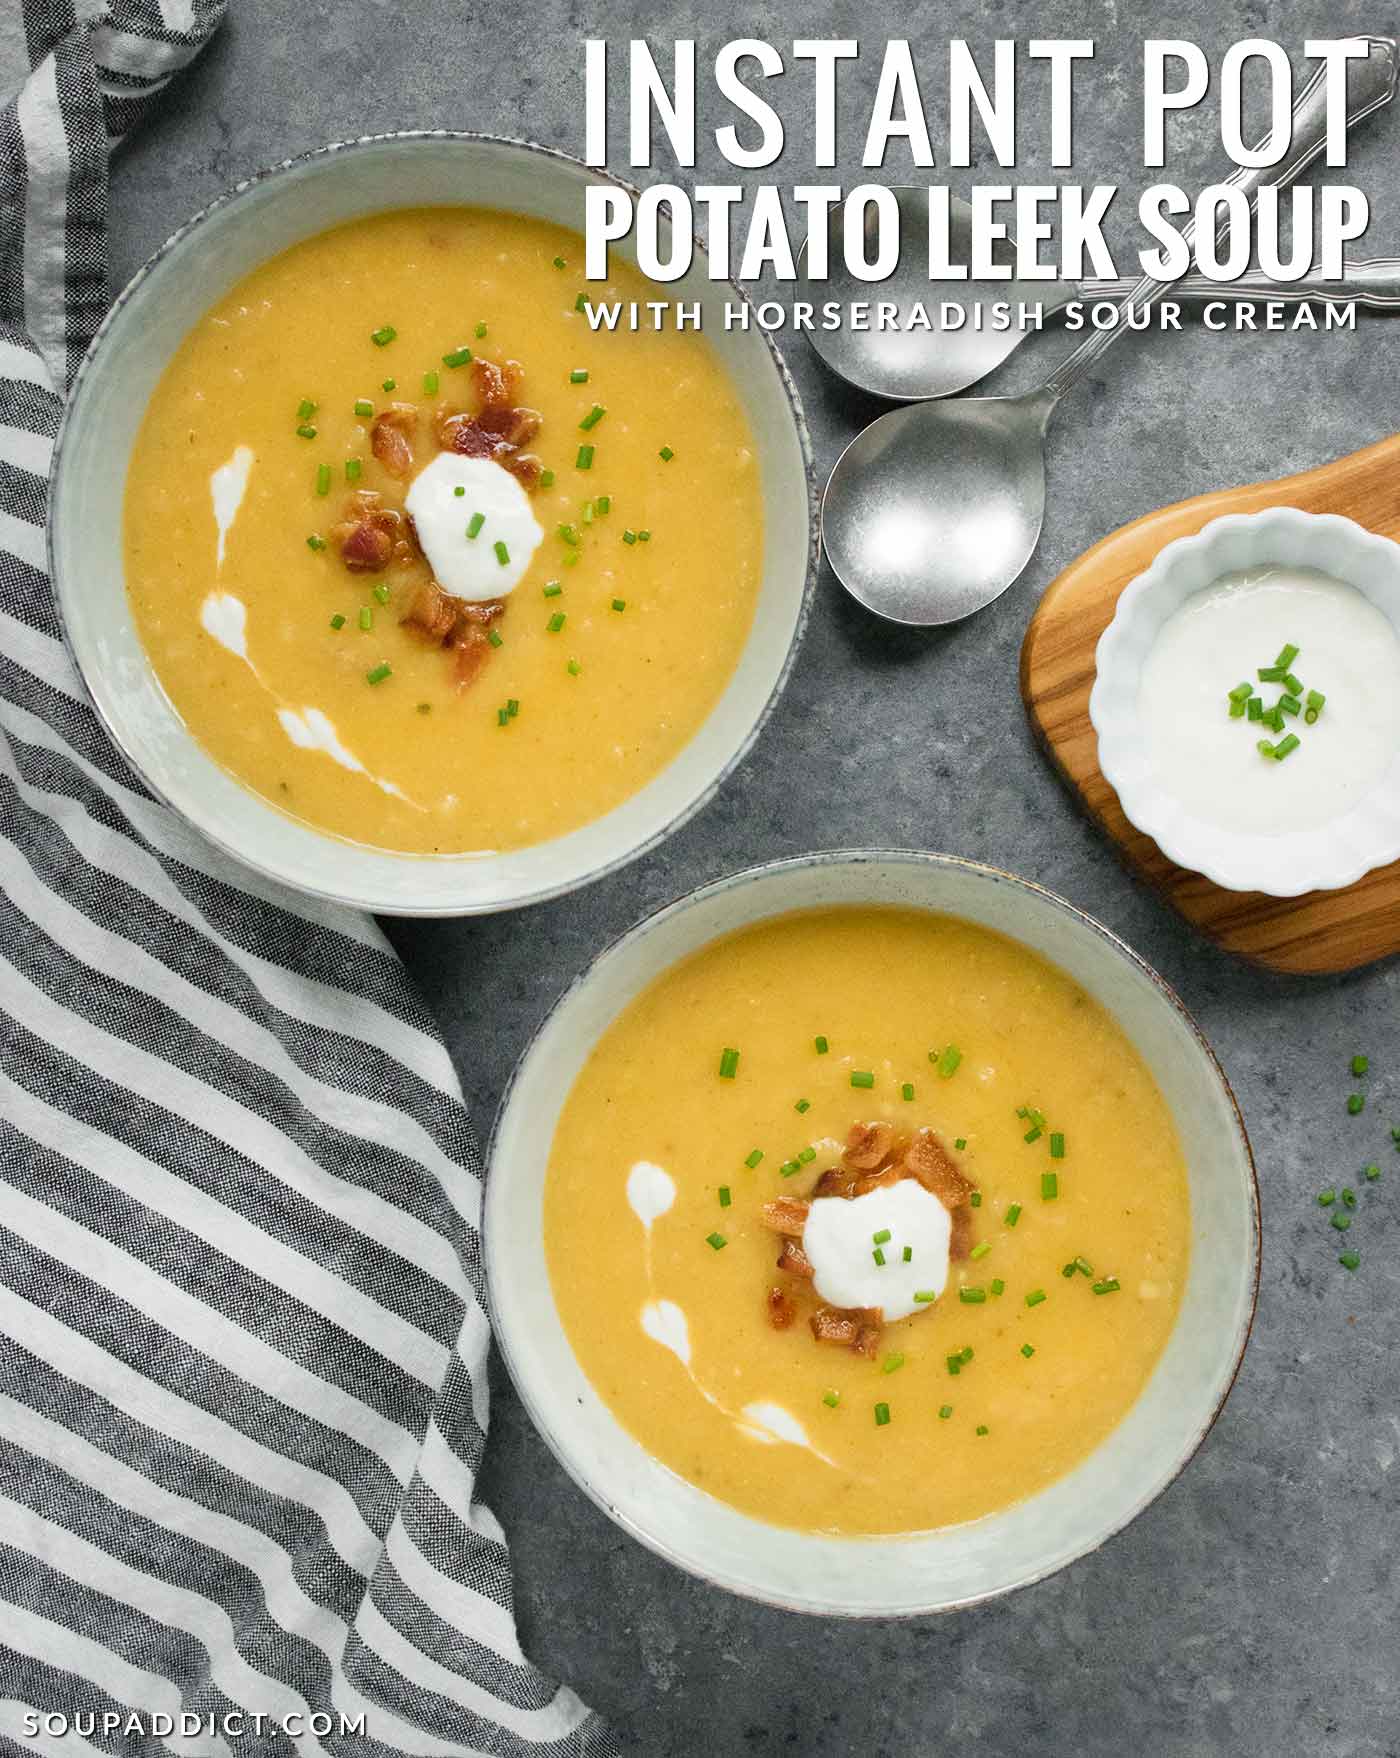 Instant Pot Potato Leek Soup - Recipe at SoupAddict.com